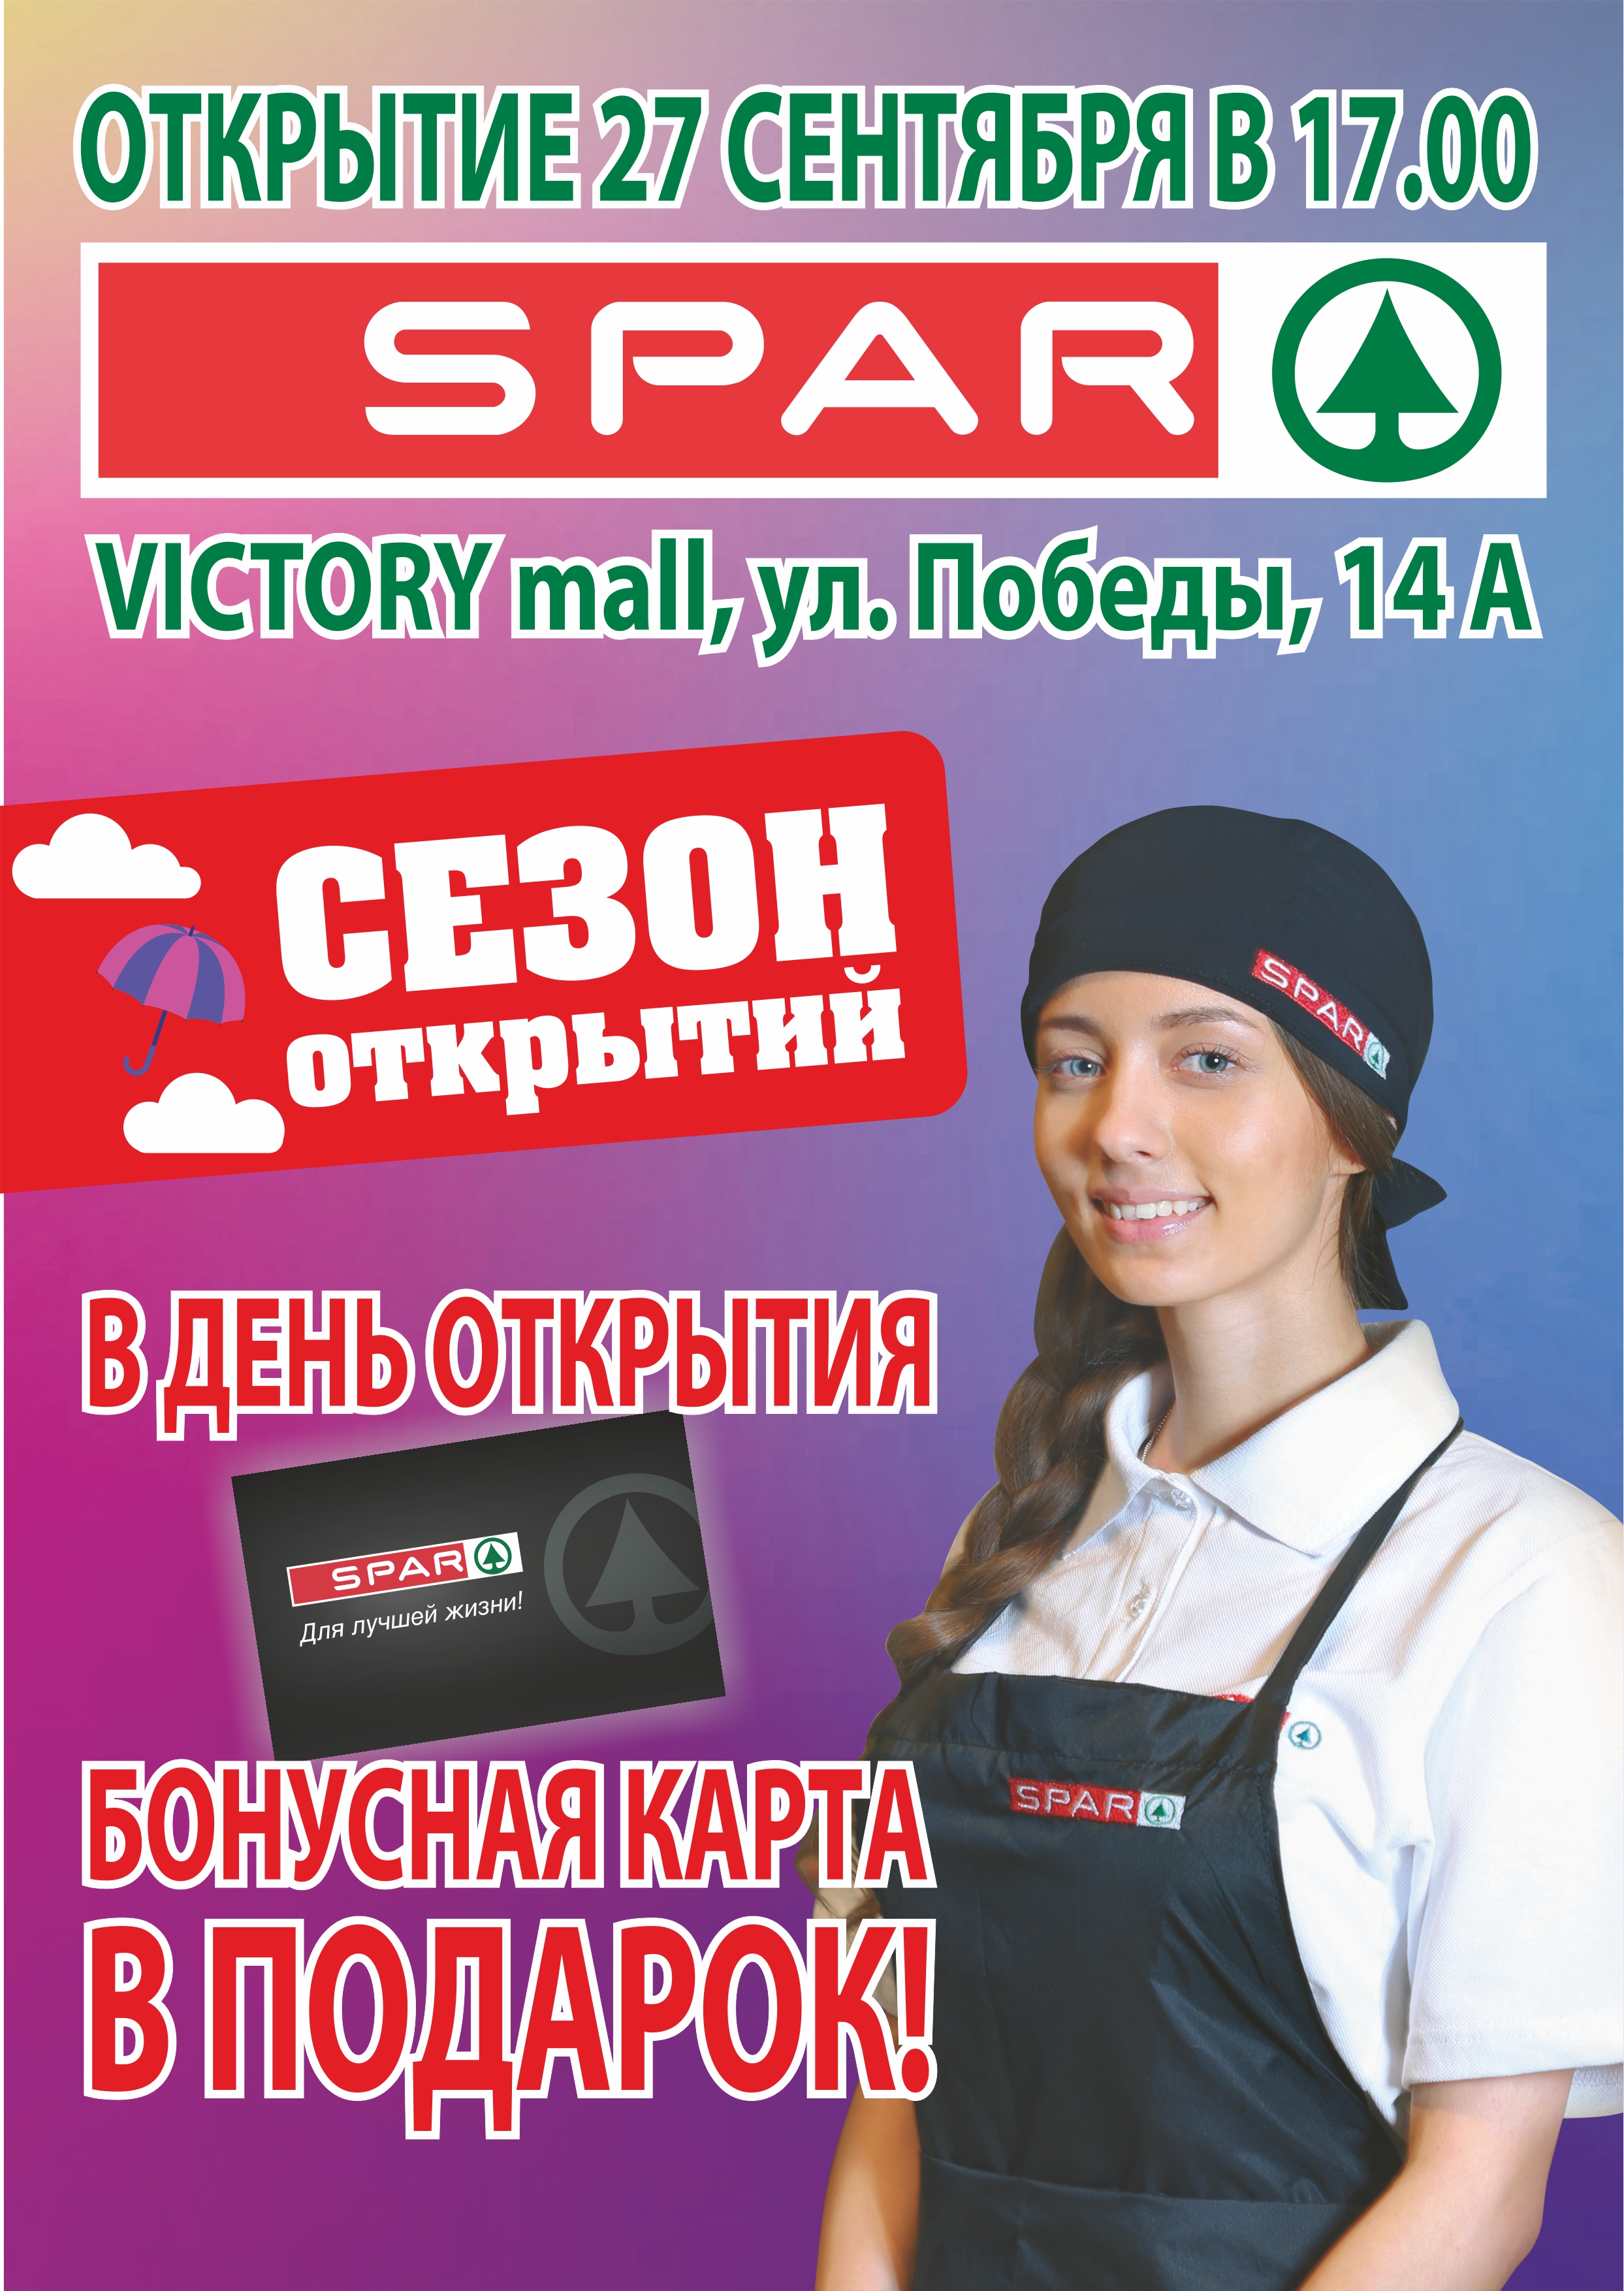 SPAR в Екатеринбурге!